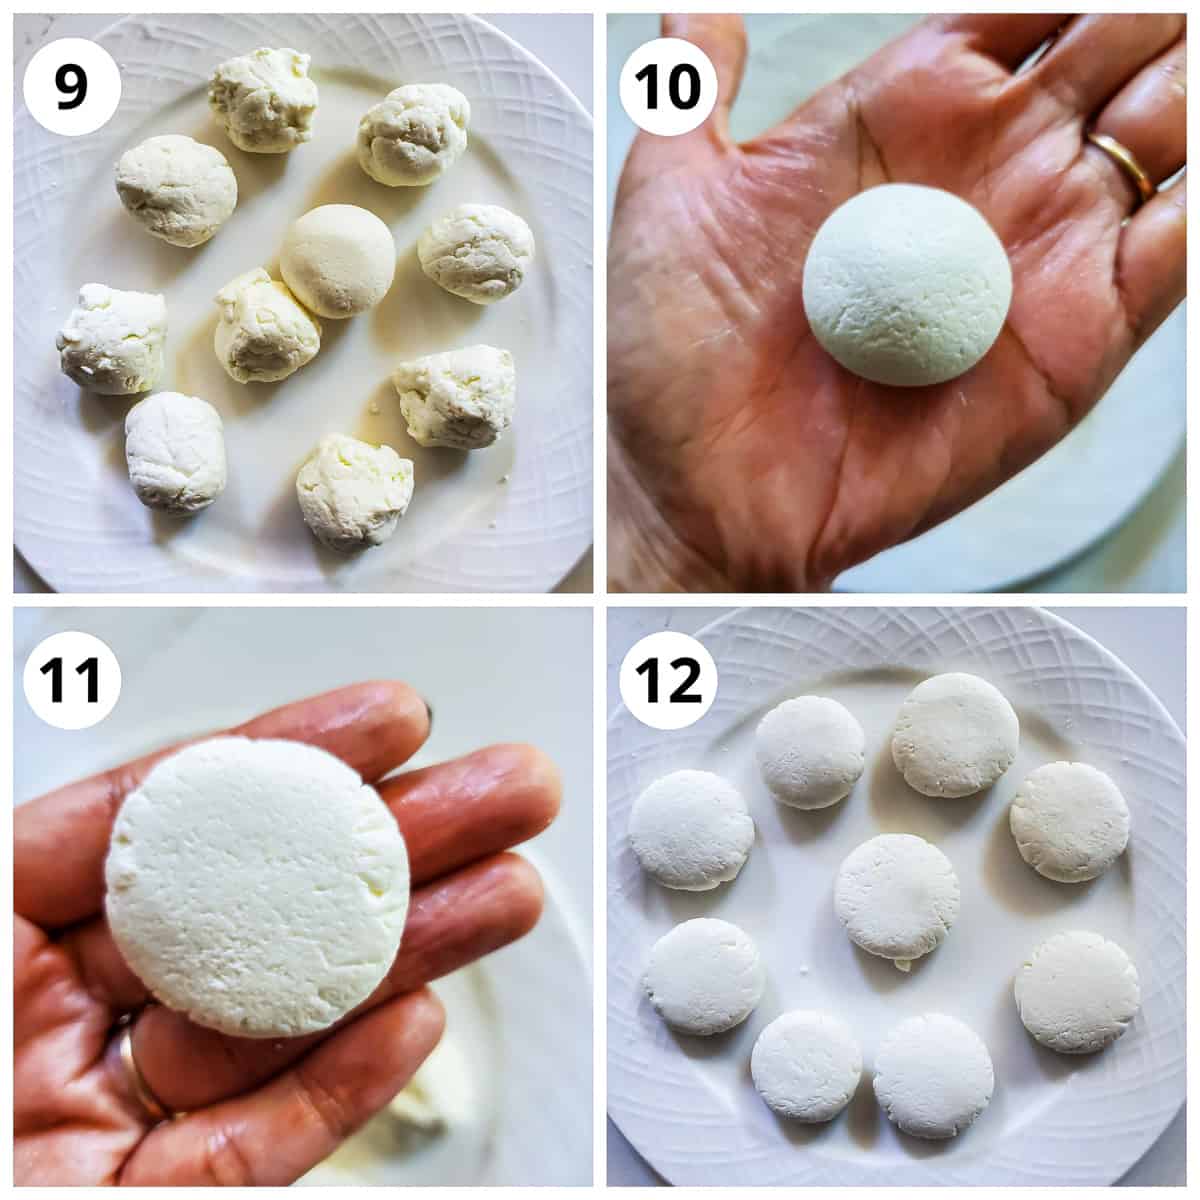 Making smooth rasmalai balls